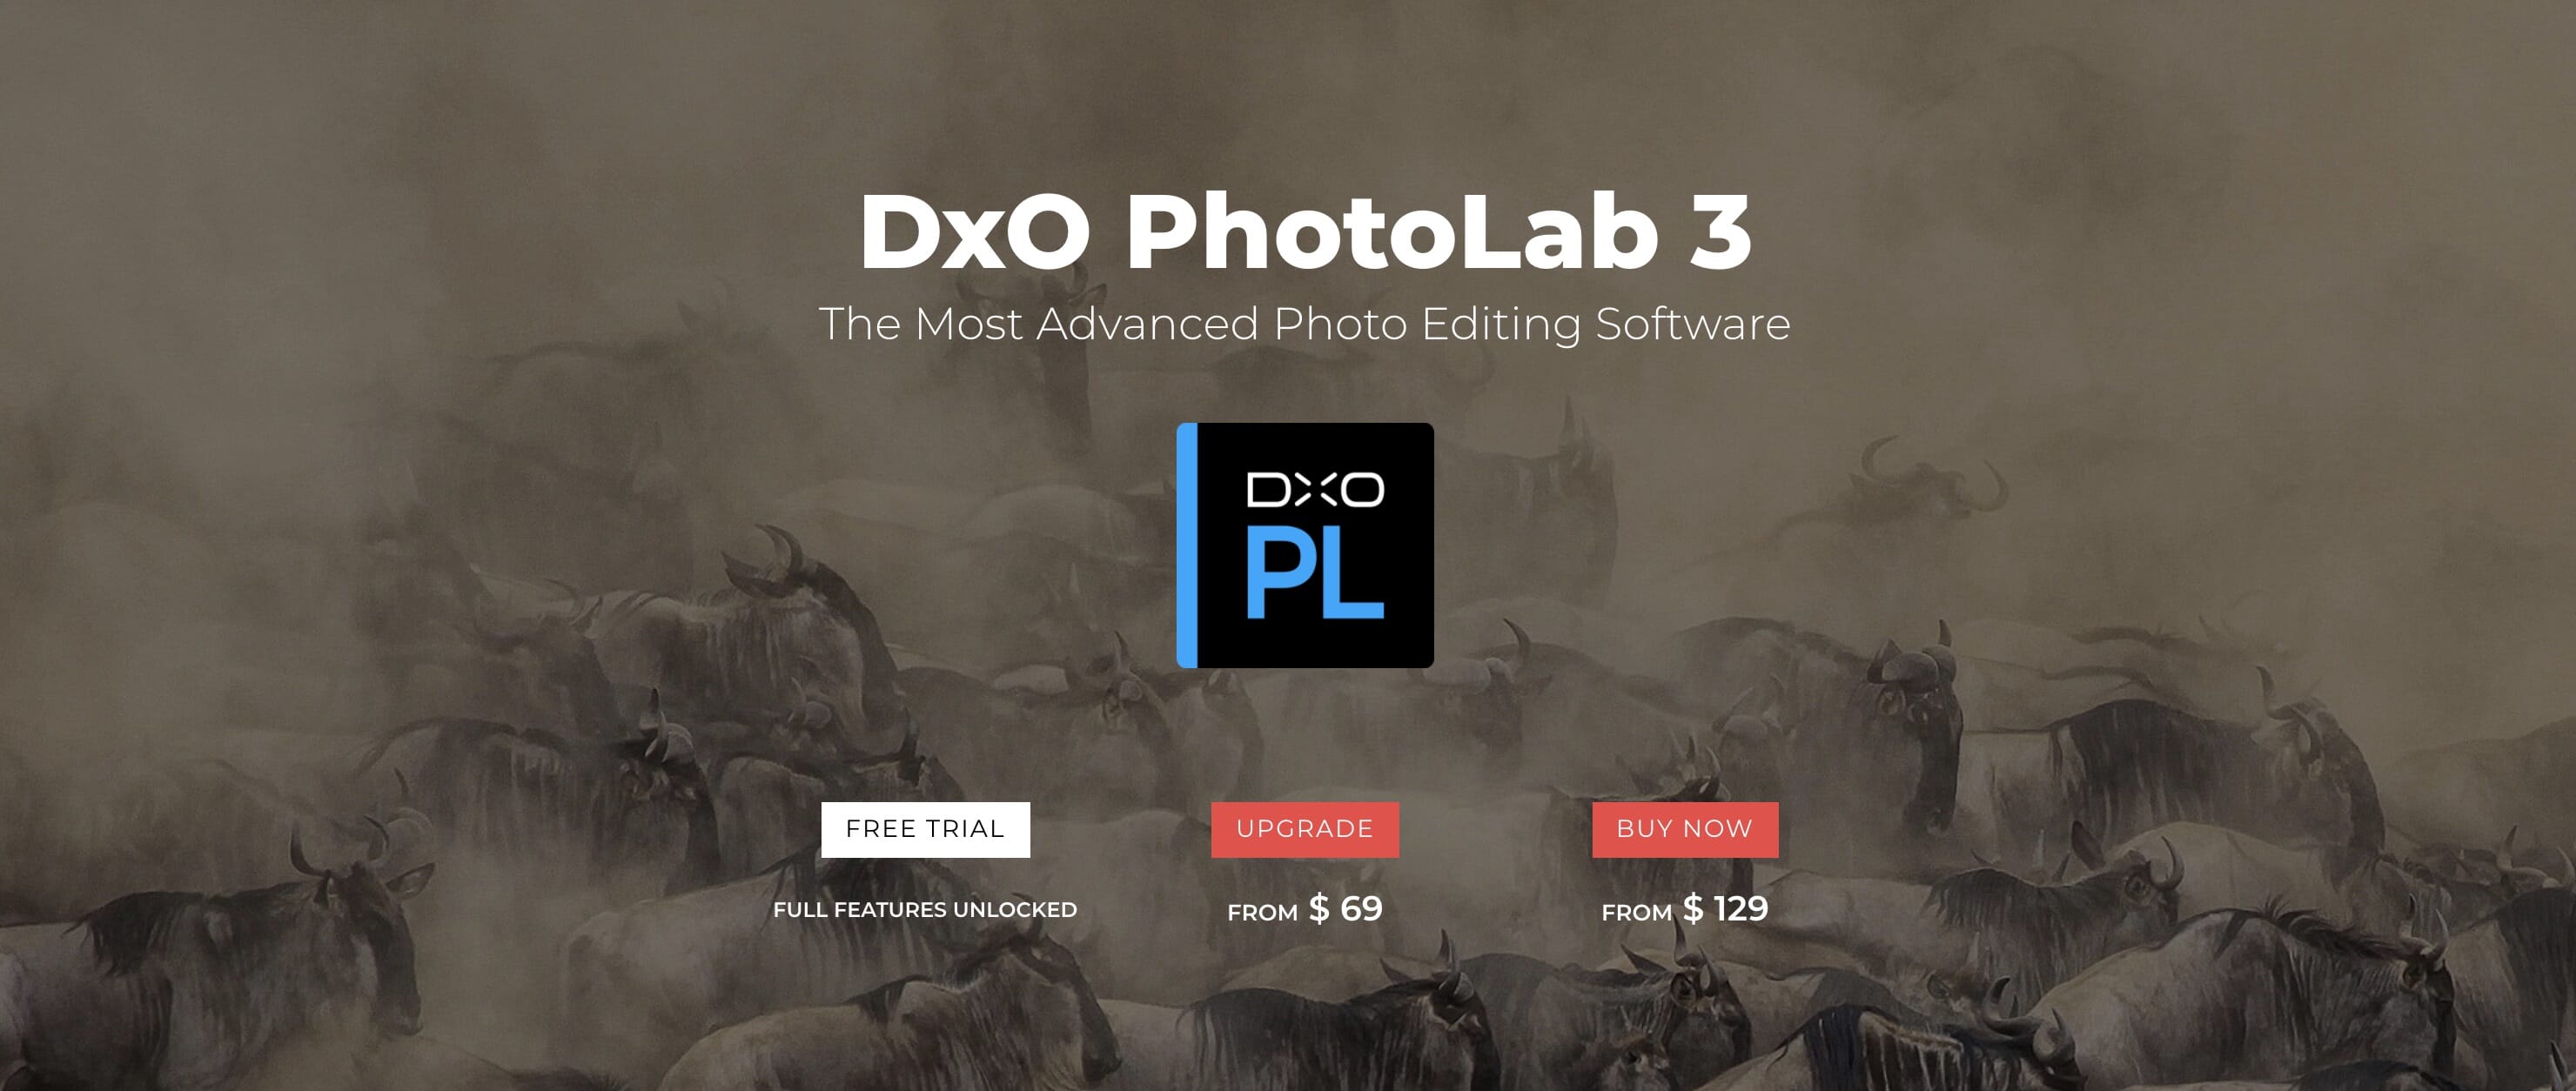 dxo photolab 3 build 4247 elite review